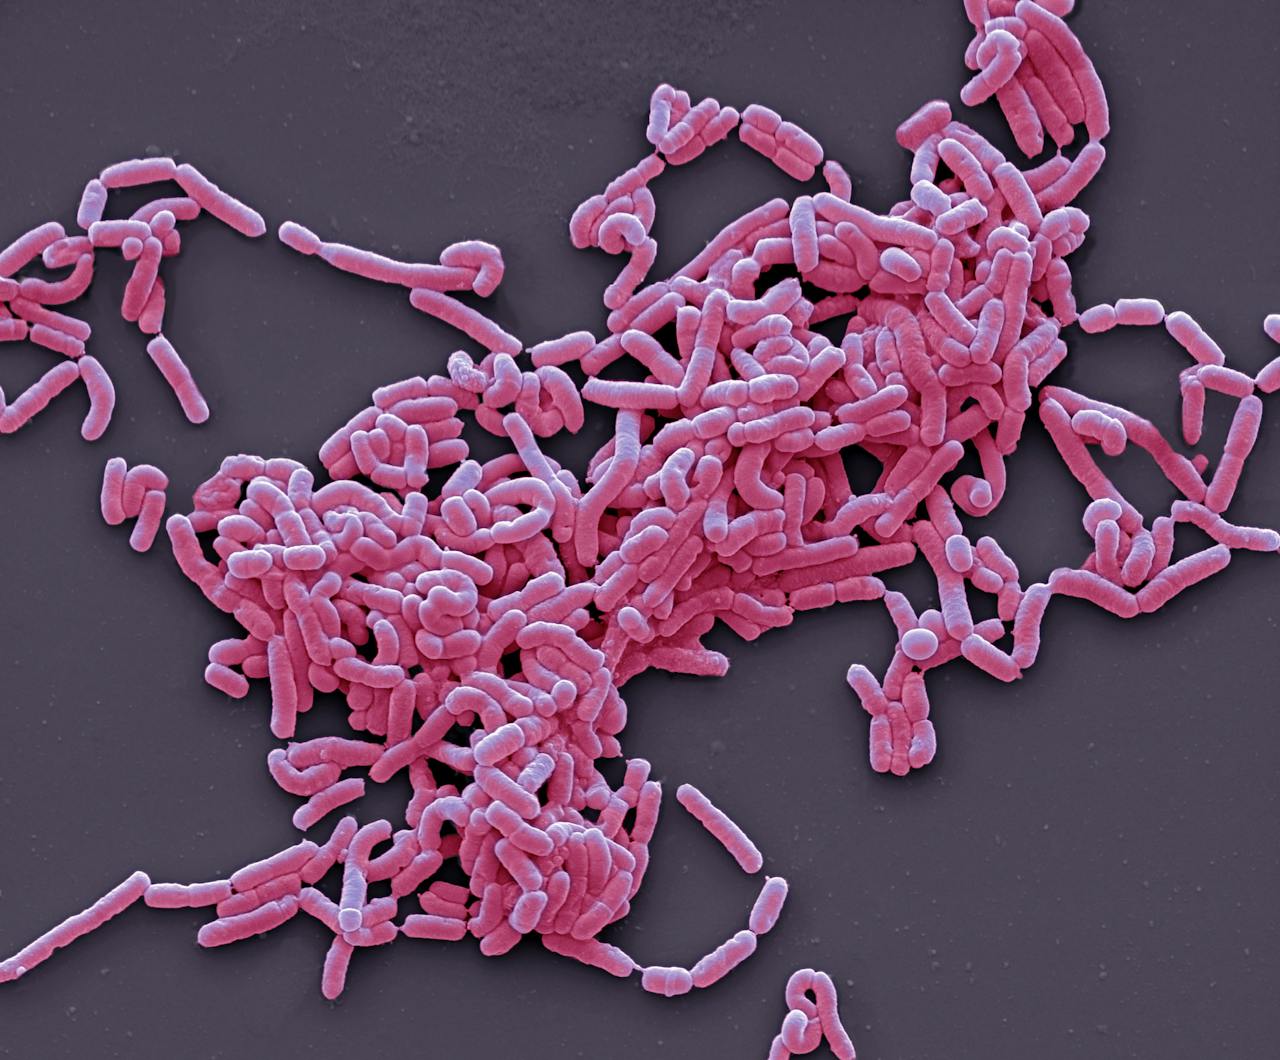 Een close-up van roze melkzuurbacteriën op een zwarte achtergrond.